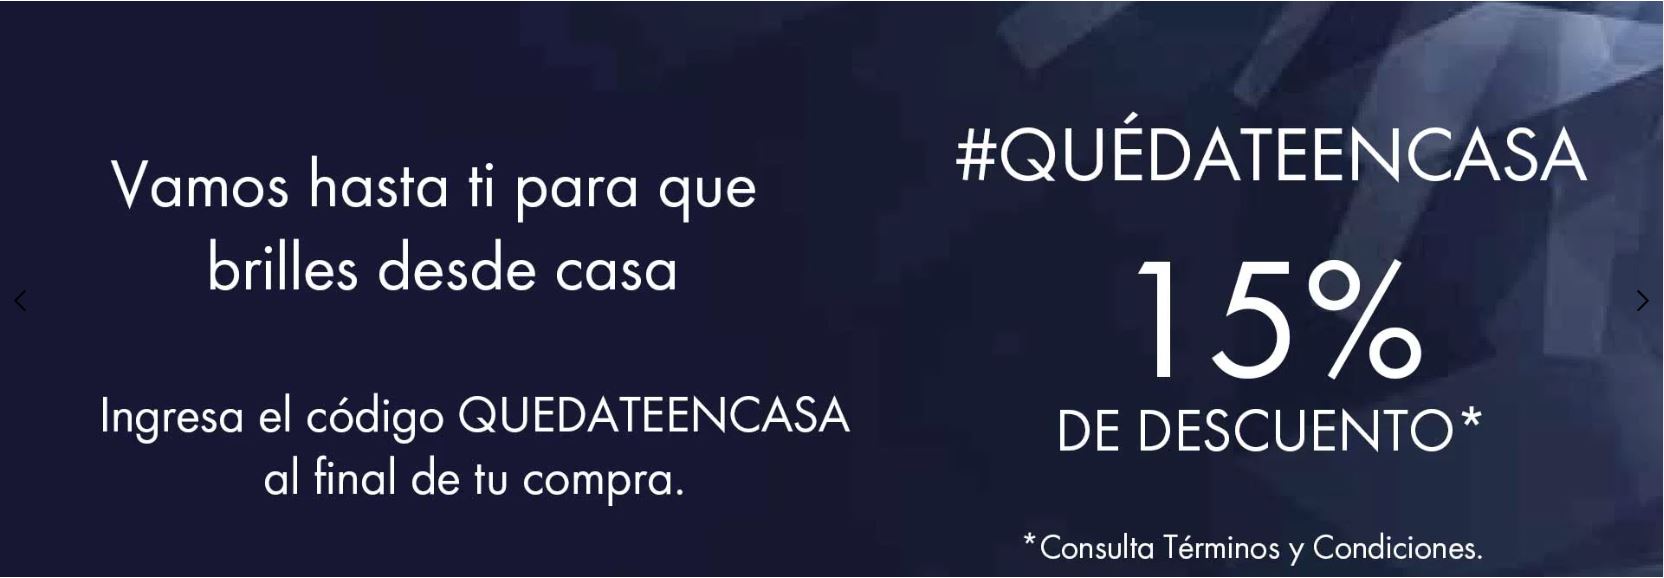 Temprano Reafirmar intercambiar Cazaofertas on Twitter: "Código de cupón Swarovski Día de las Madres de 15%  de descuento + 12 MSI https://t.co/3MocpJ2Vpq #Oferta #promocion #México  #ofertas #promociones #descuentos #Cazaofertas https://t.co/hfombxEno2" /  Twitter